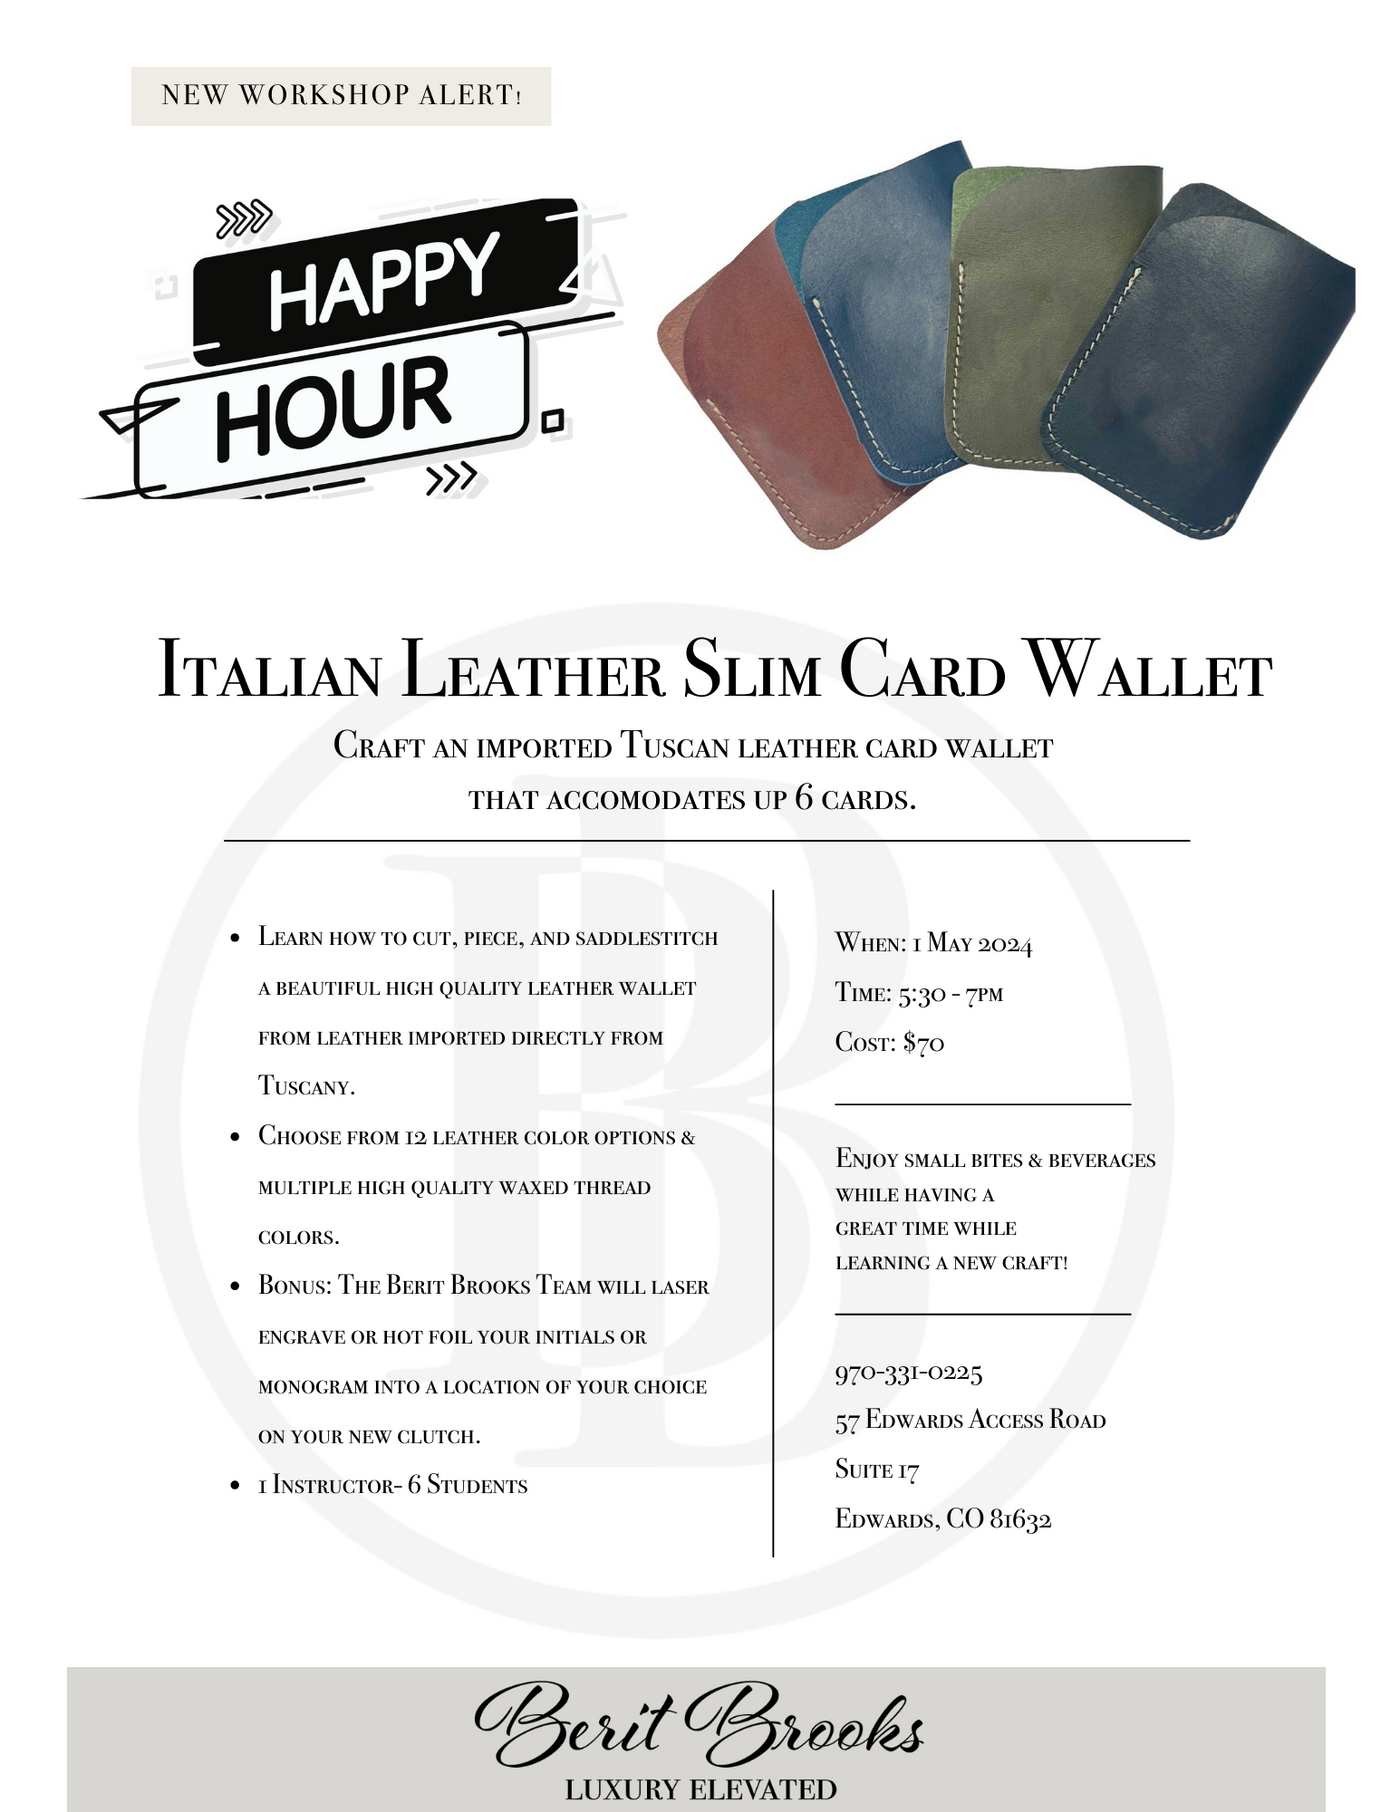 "Happy Hour" Slim Card Wallet Workshop